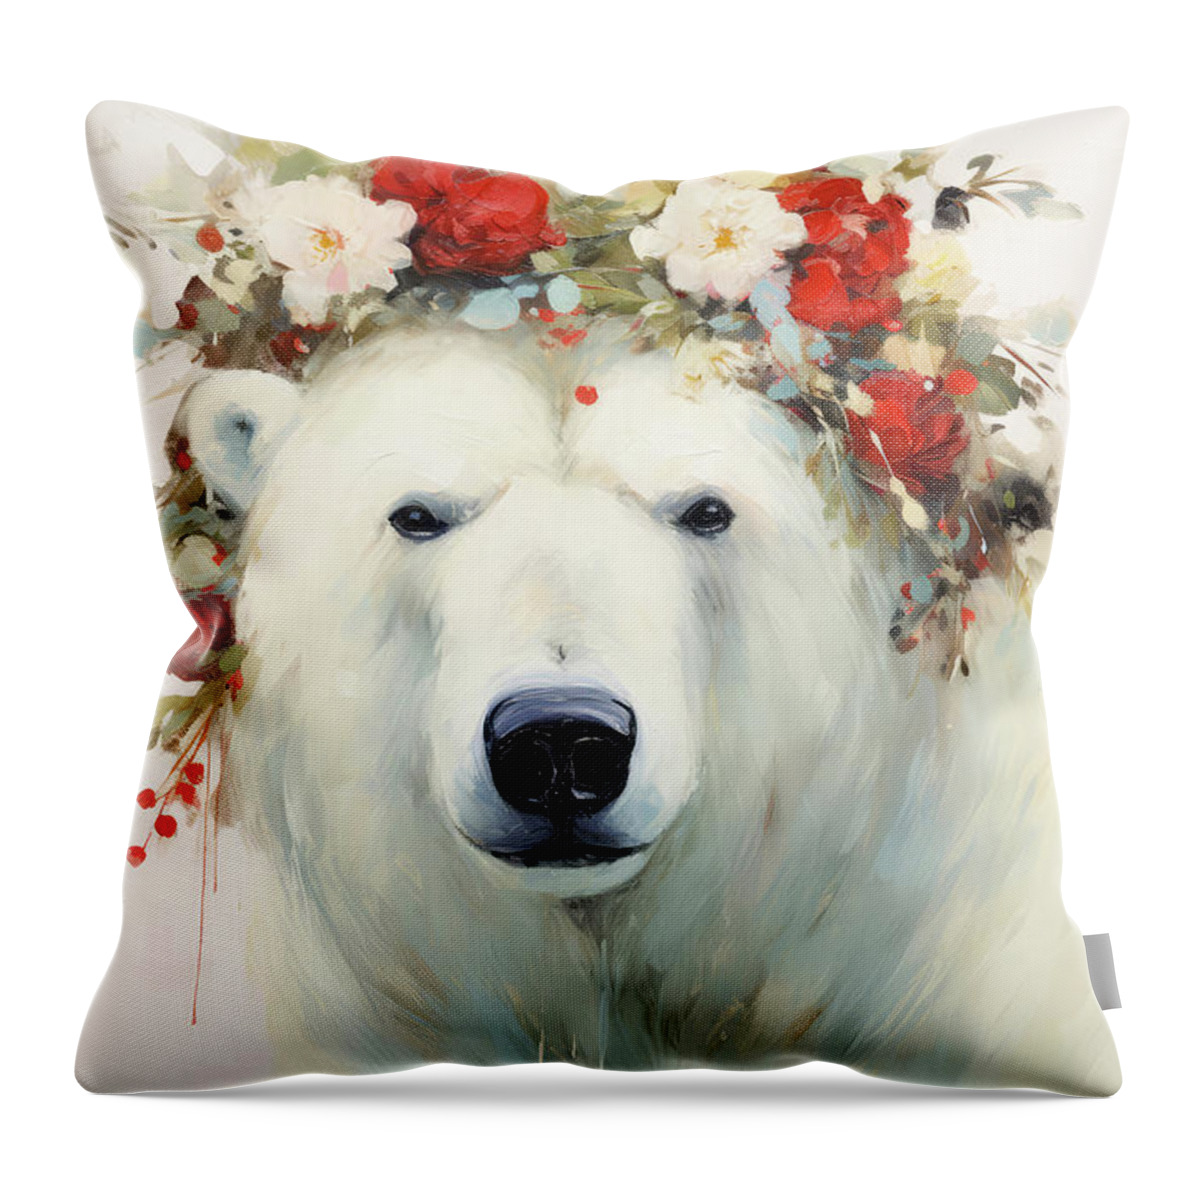 Polar Bear Throw Pillow featuring the painting Pretty Polar Bear by Tina LeCour